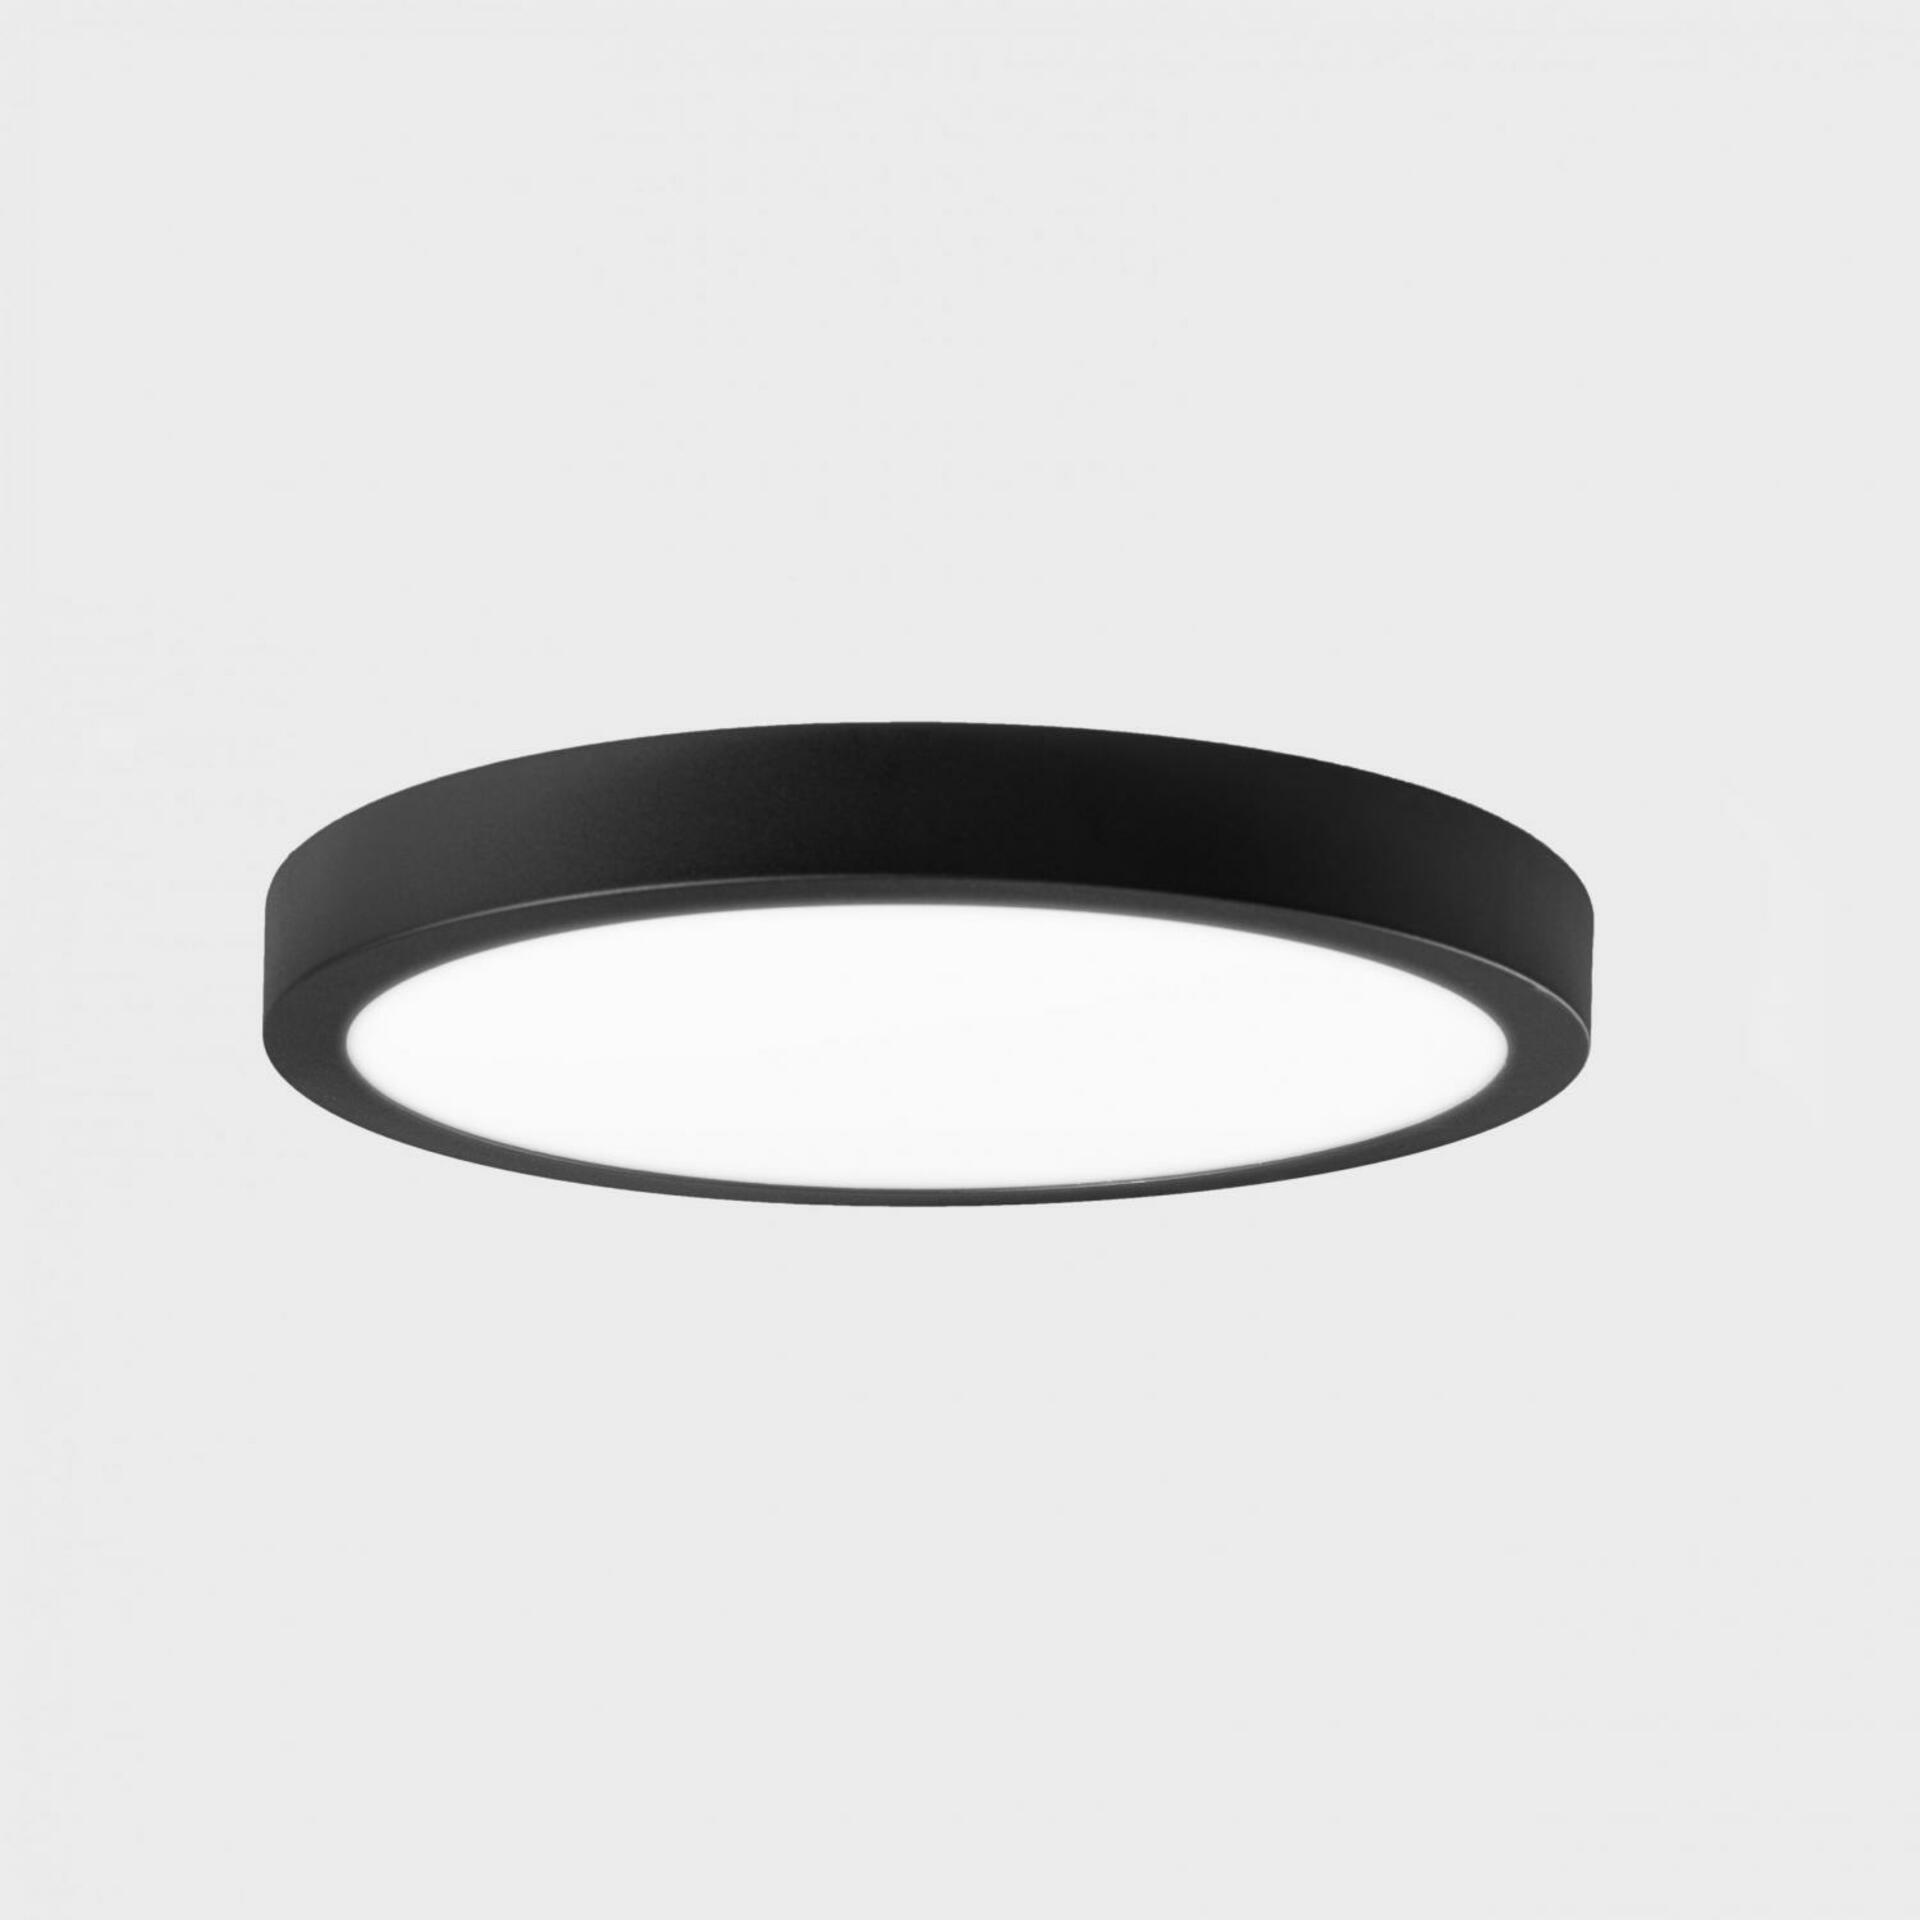 KOHL LIGHTING KOHL-Lighting DISC SLIM stropní svítidlo pr. 500 mm černá 48 W CRI 80 3000K Non-Dimm